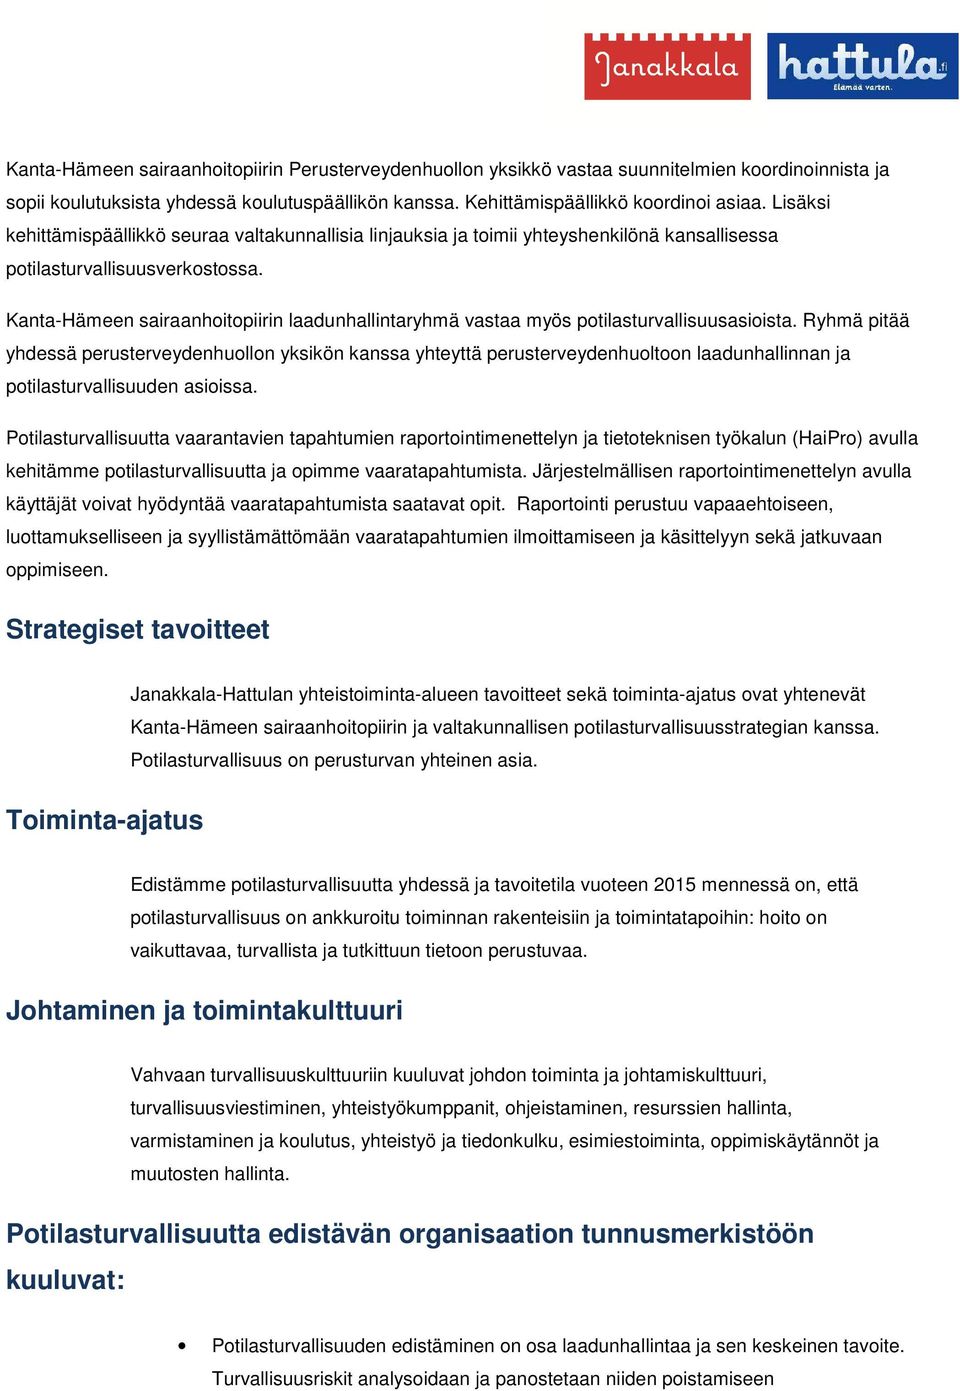 Kanta-Hämeen sairaanhoitopiirin laadunhallintaryhmä vastaa myös potilasturvallisuusasioista.